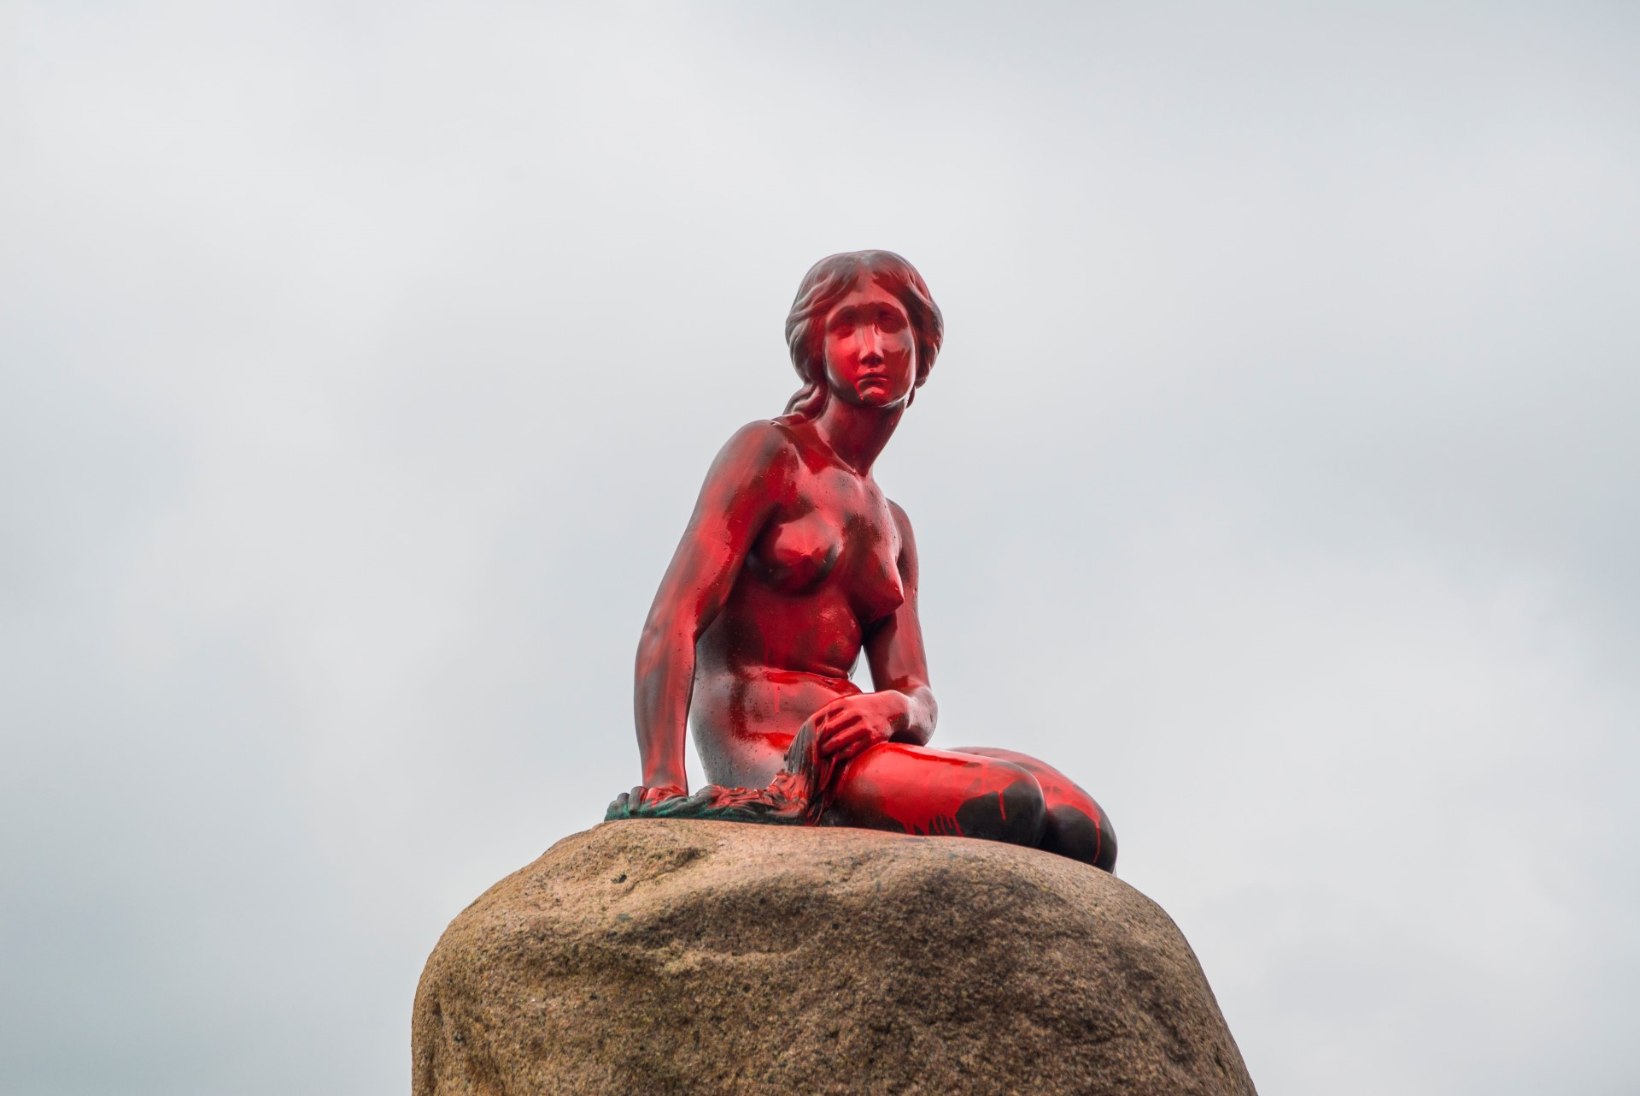 FOTOD | Kopenhaageni kuulus Väike Merineitsi värviti punaseks